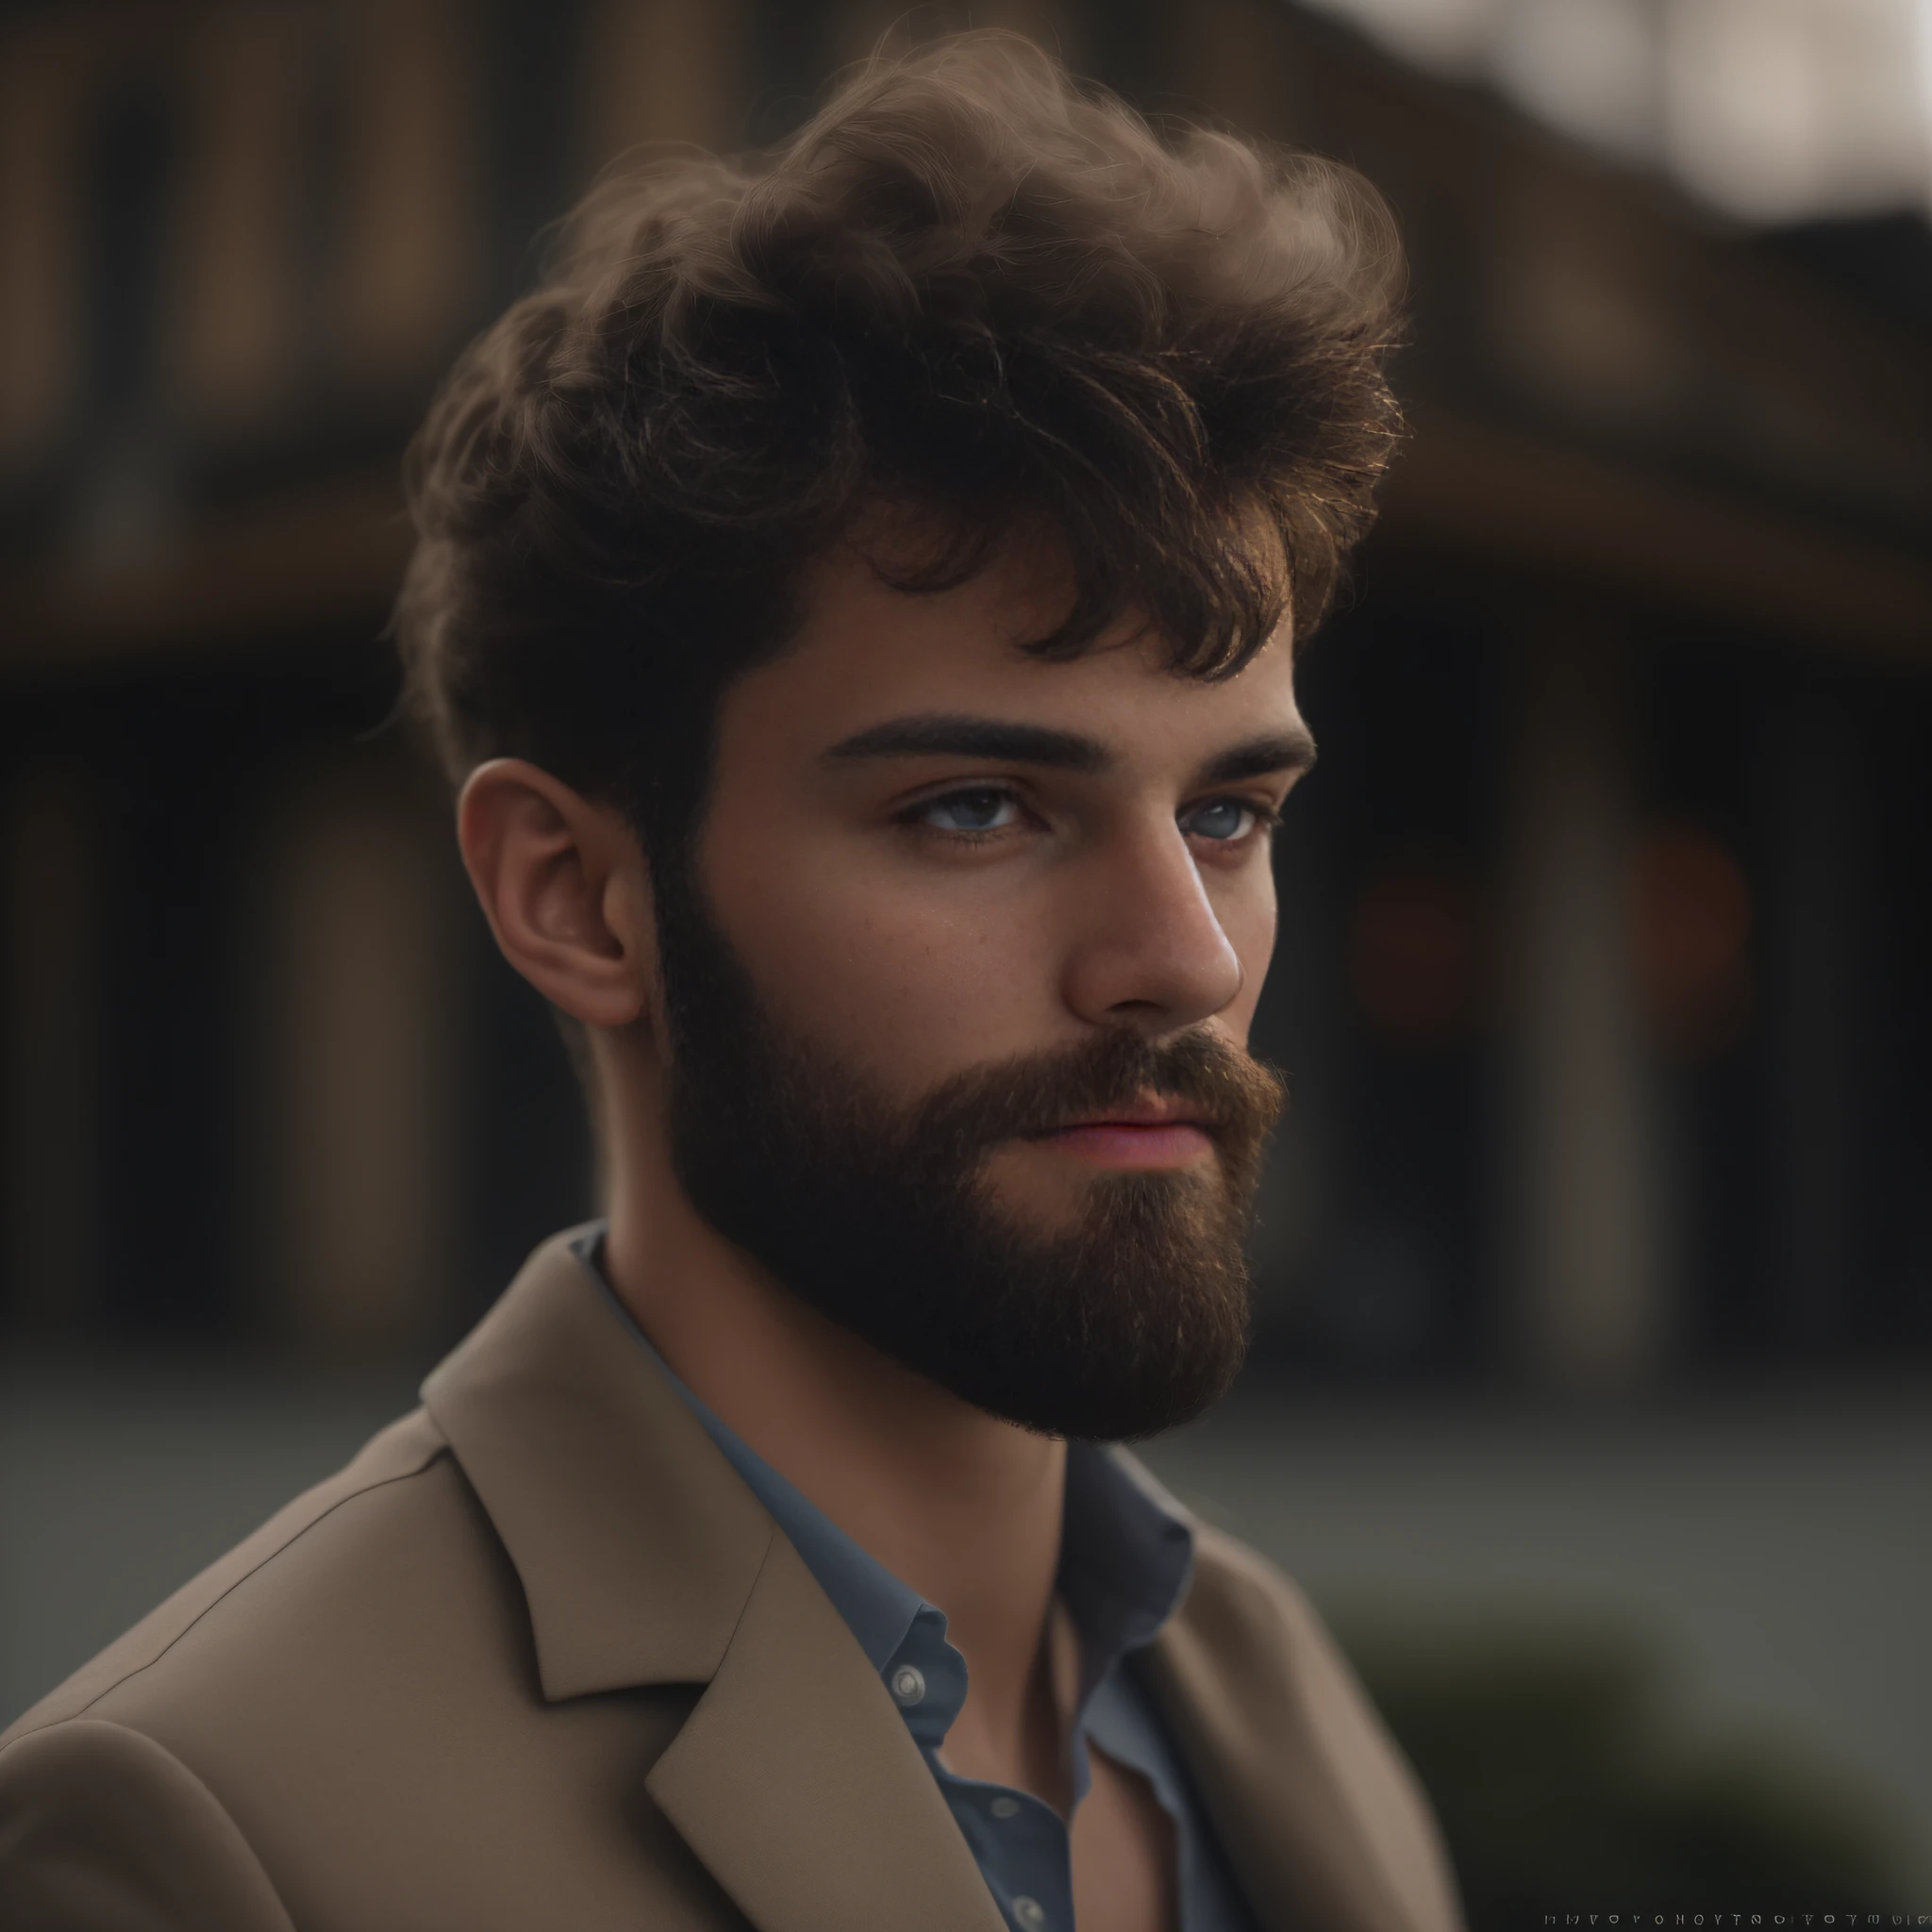 23-летний мужчина из Бельгии., мужской род, бородатый, ключевая борода, модель, все тело, элегантная поза, очень красивый, глядя в камеру, детальное изображение, UHD, 8К, хорошо освещенный, зерно пленки, идеальное освещение